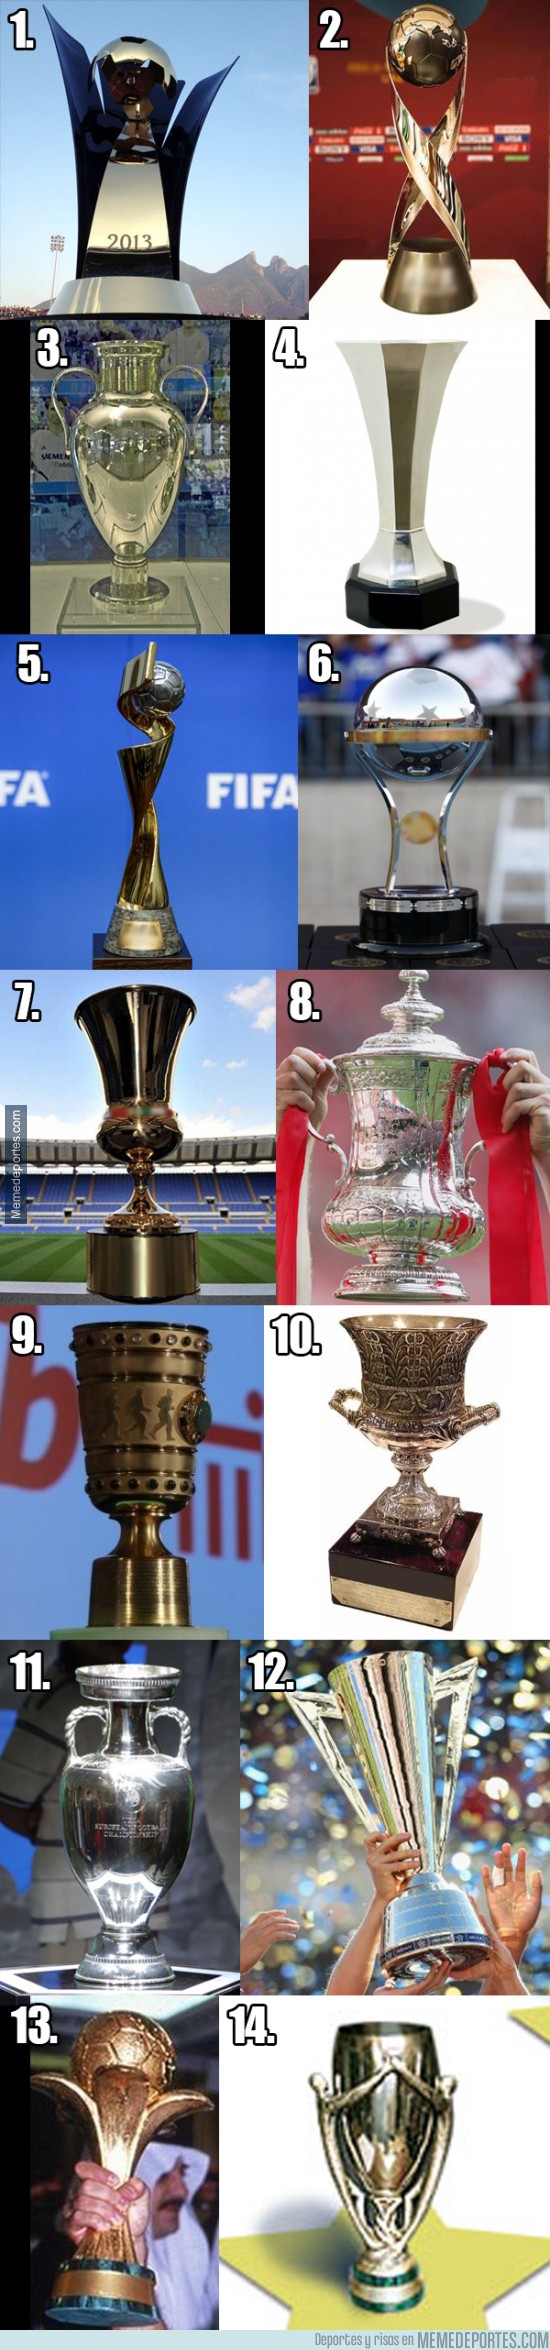 713634 - Test Cultural del Fútbol: ¿Reconoces todos estos trofeos del mundo?